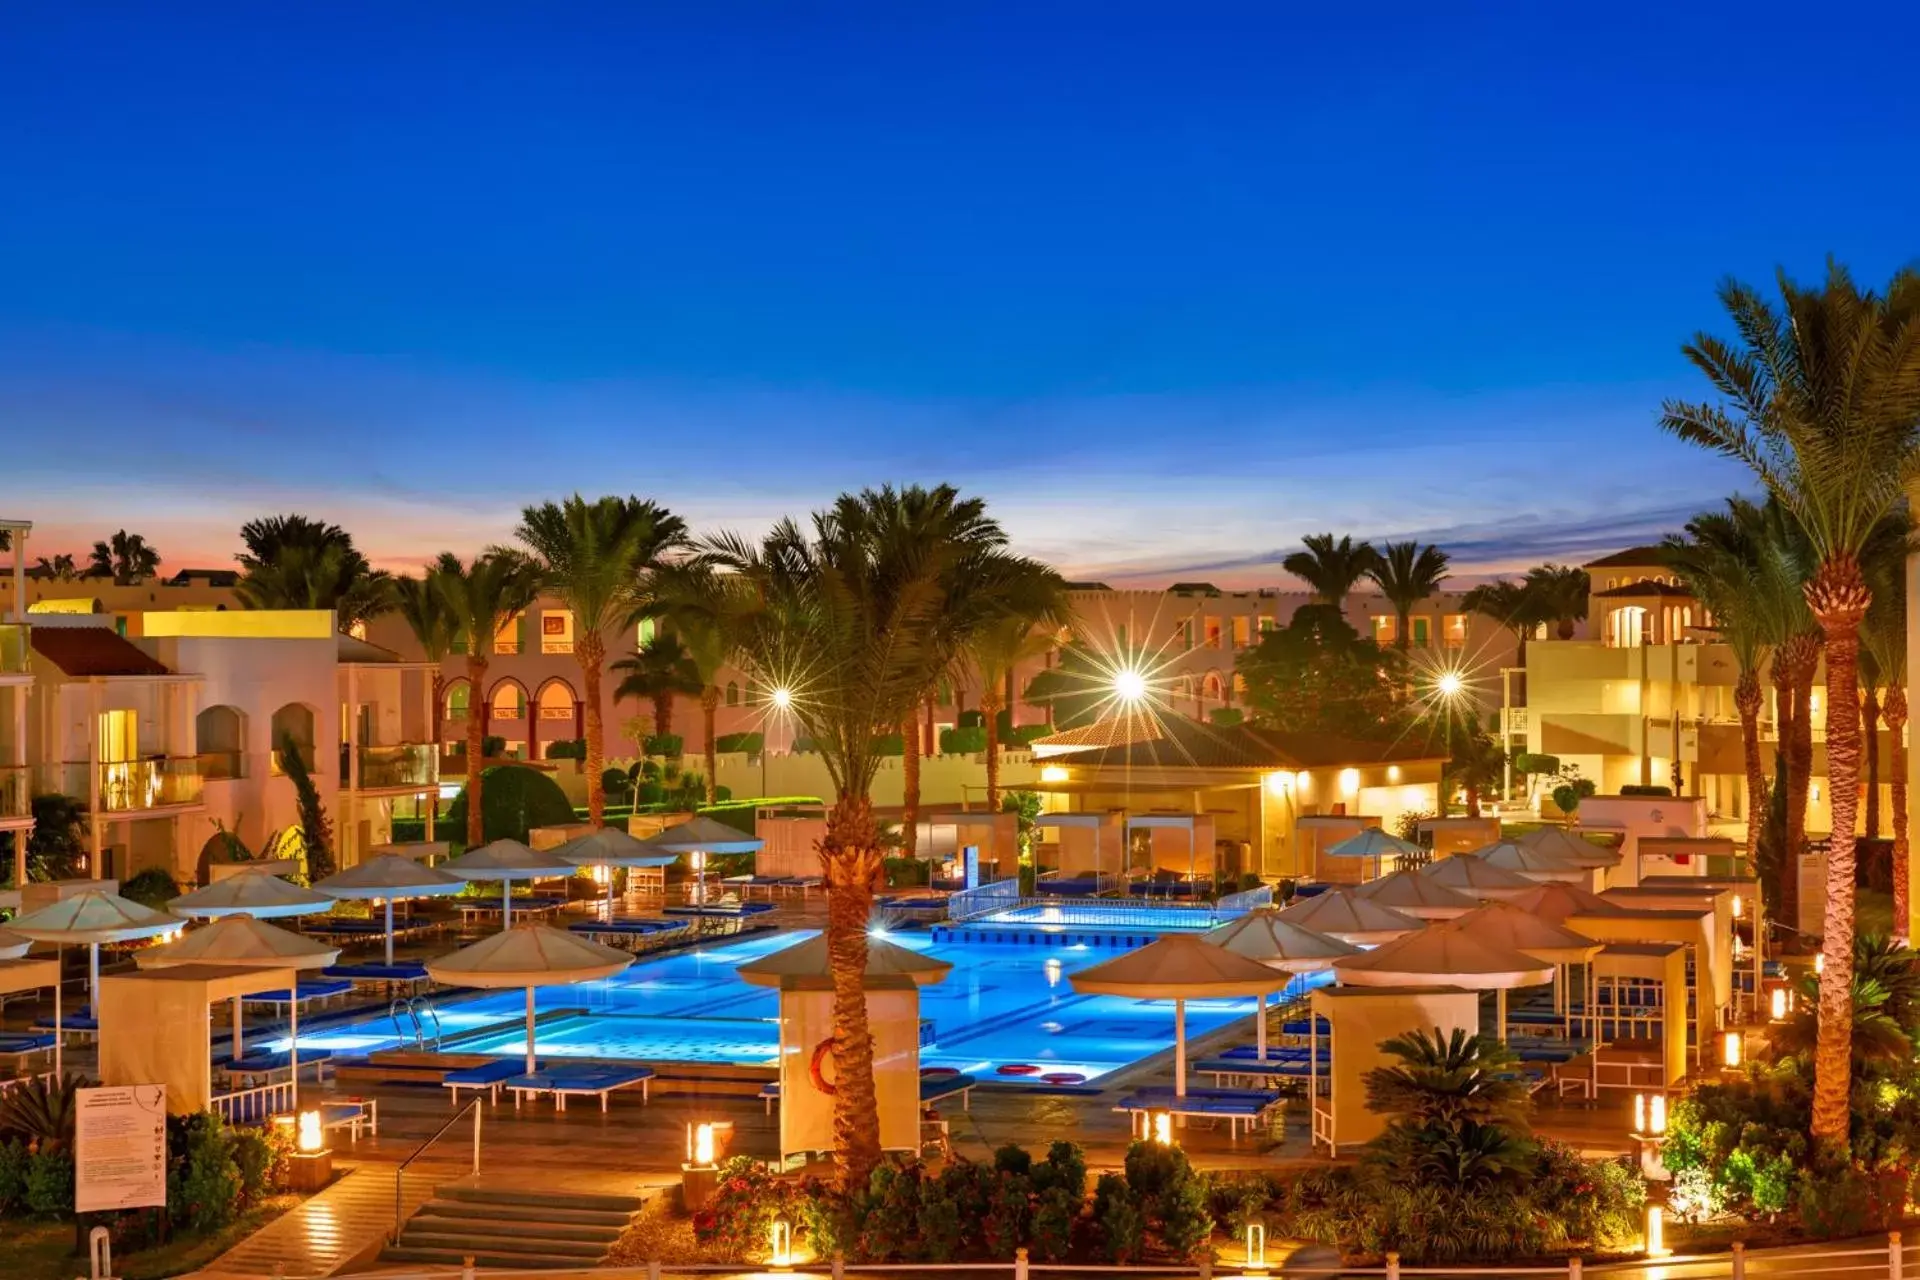 Pool view, Swimming Pool in Pickalbatros Dana Beach Resort - Hurghada